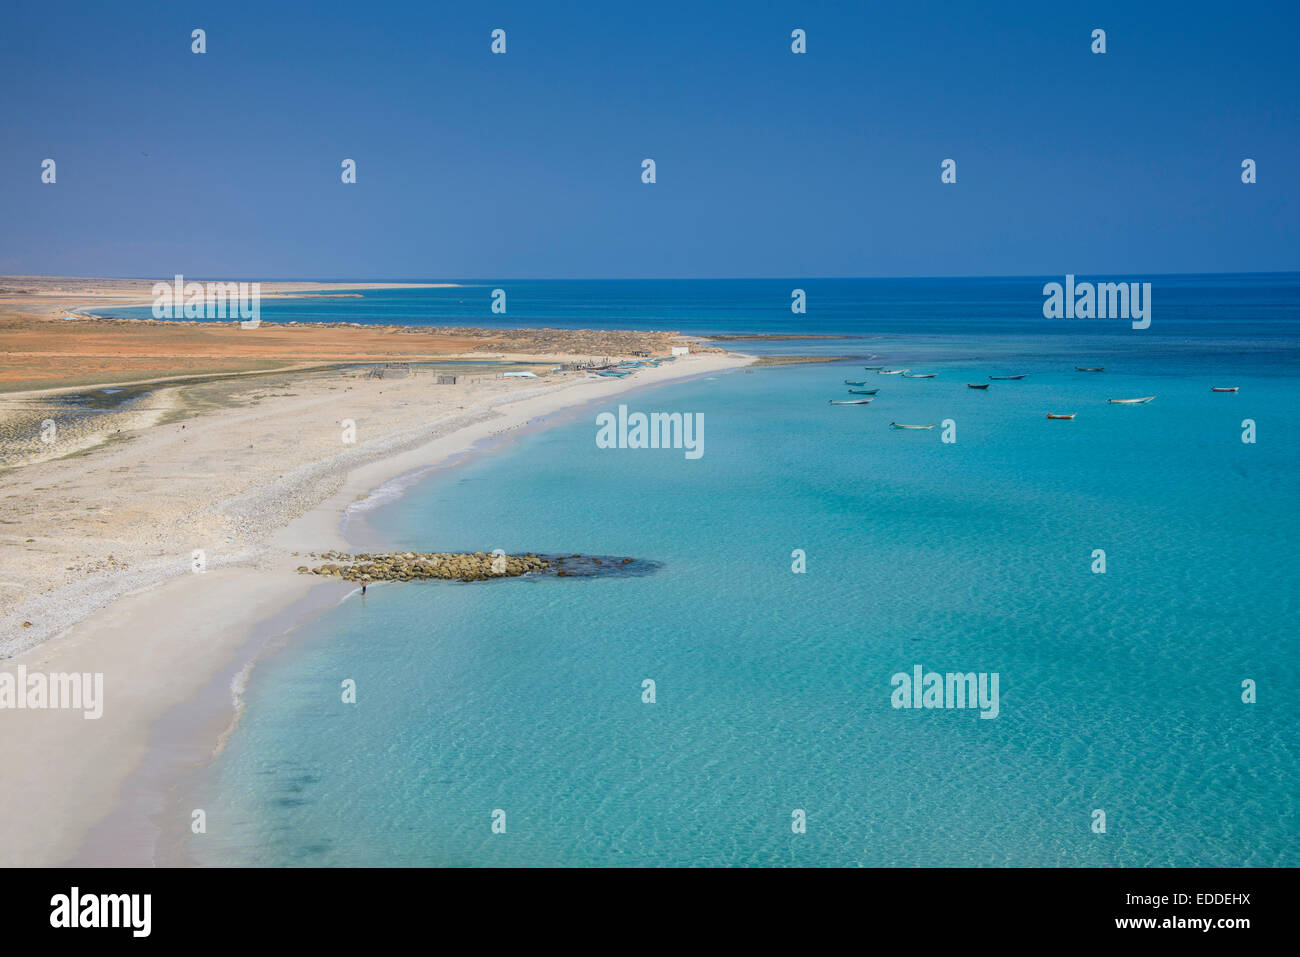 Costa con playa de arena blanca, en la isla de Socotra, Yemen Foto de stock